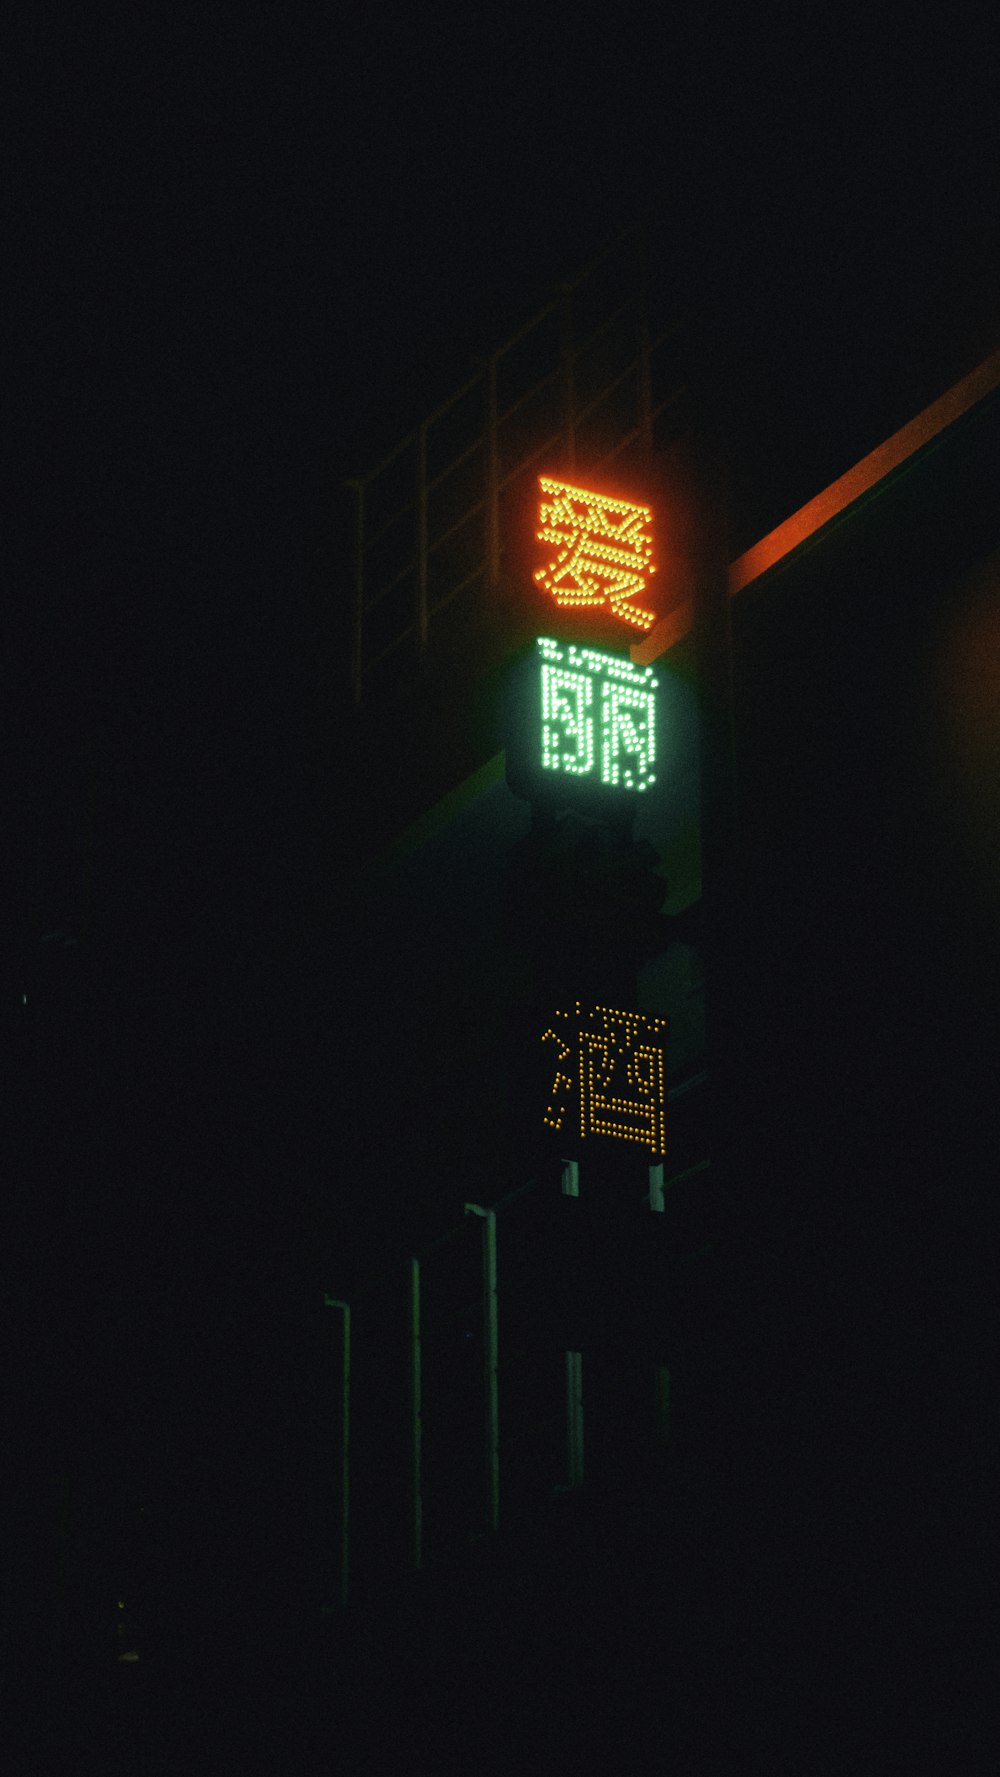 uma placa de rua iluminada no escuro